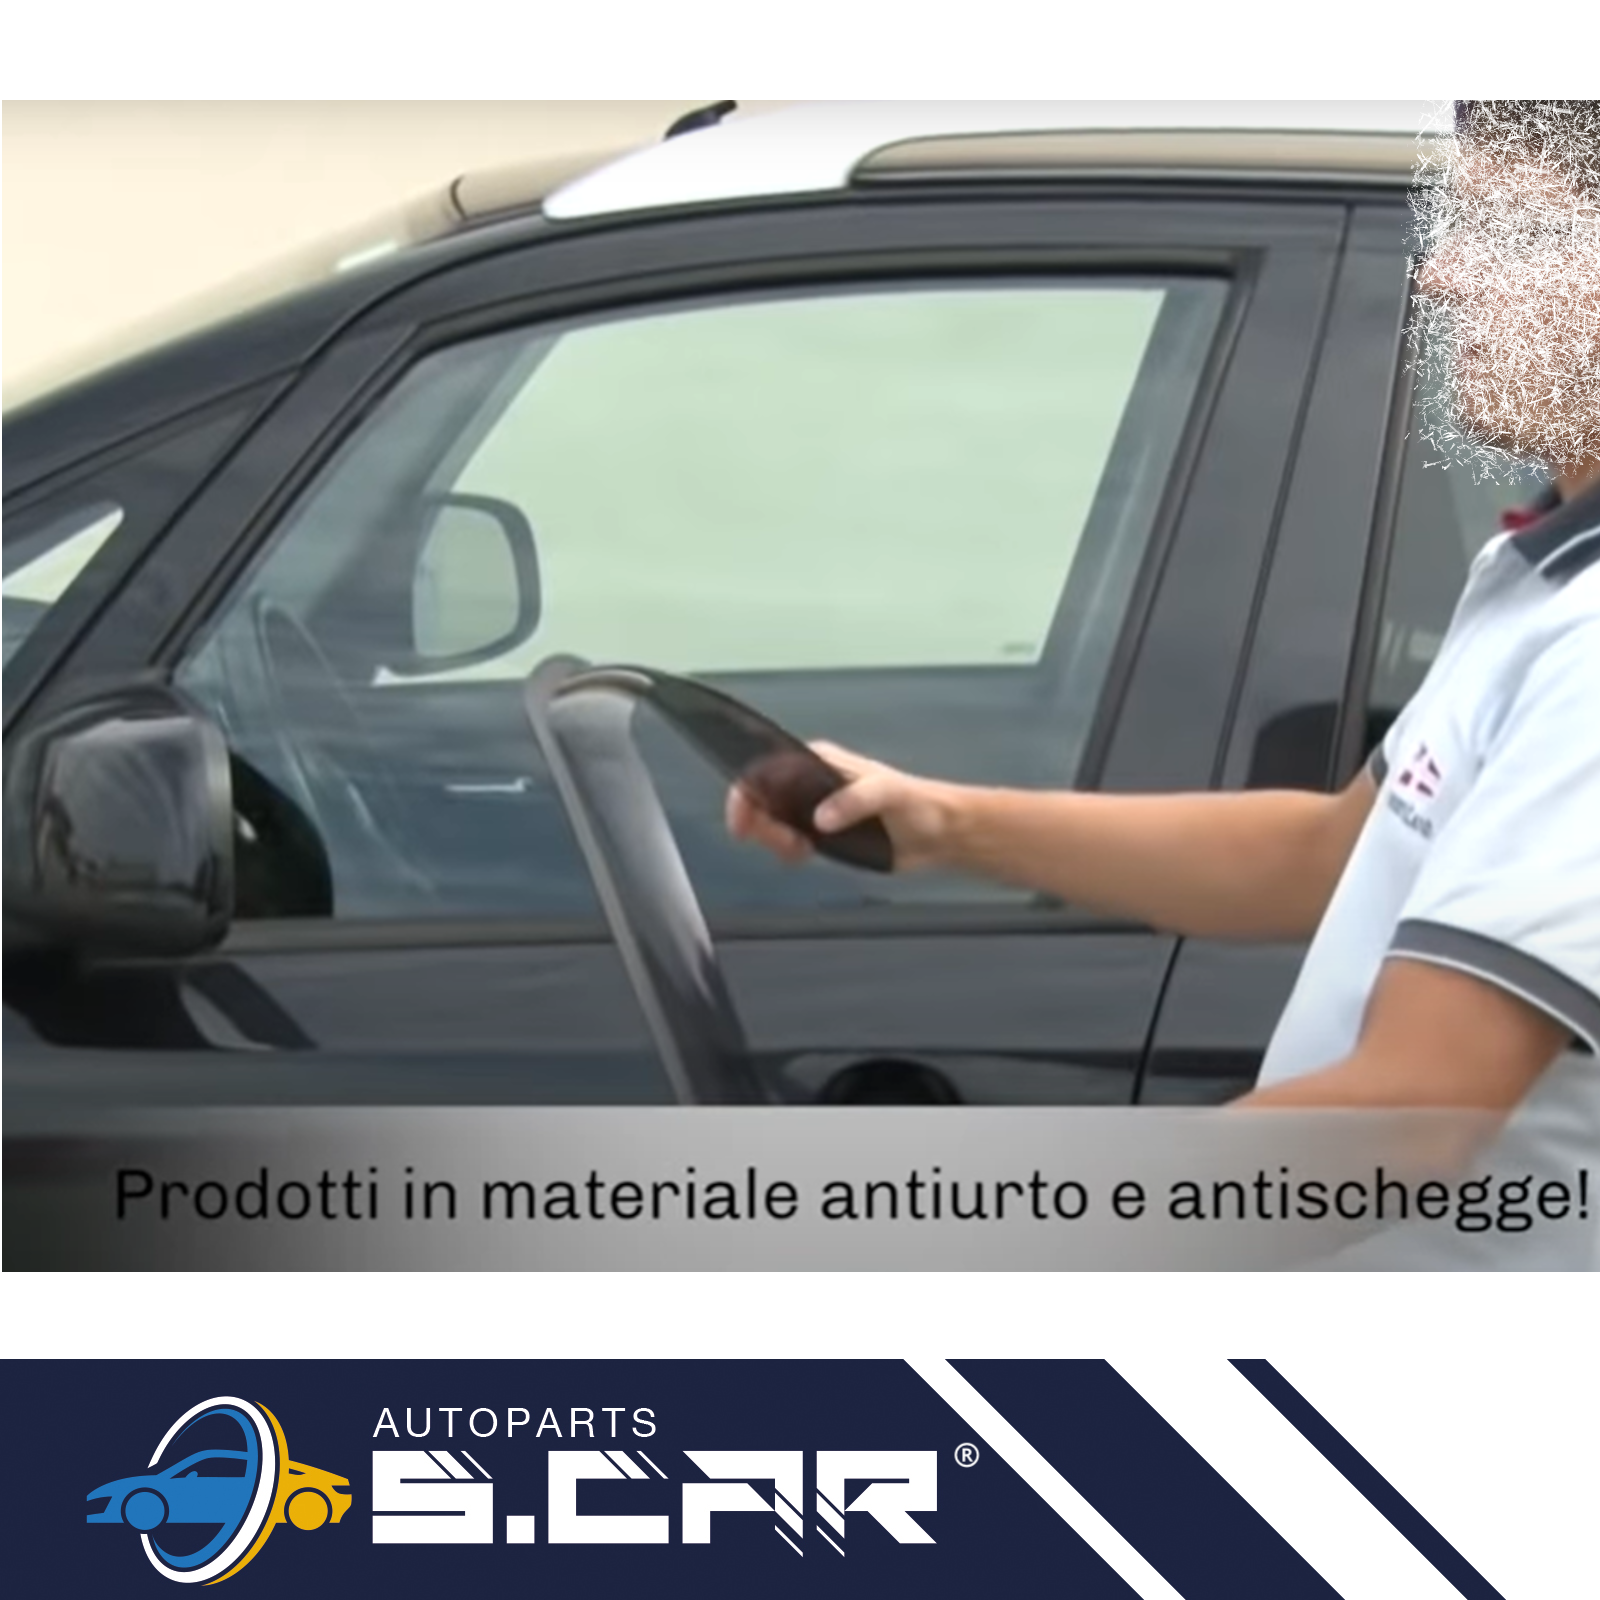 FARAD-2-Deflettori-Aria-Per-Dacia-Duster-2018-Antiturbo-Antivento-Fume-14196M-285609109259-5